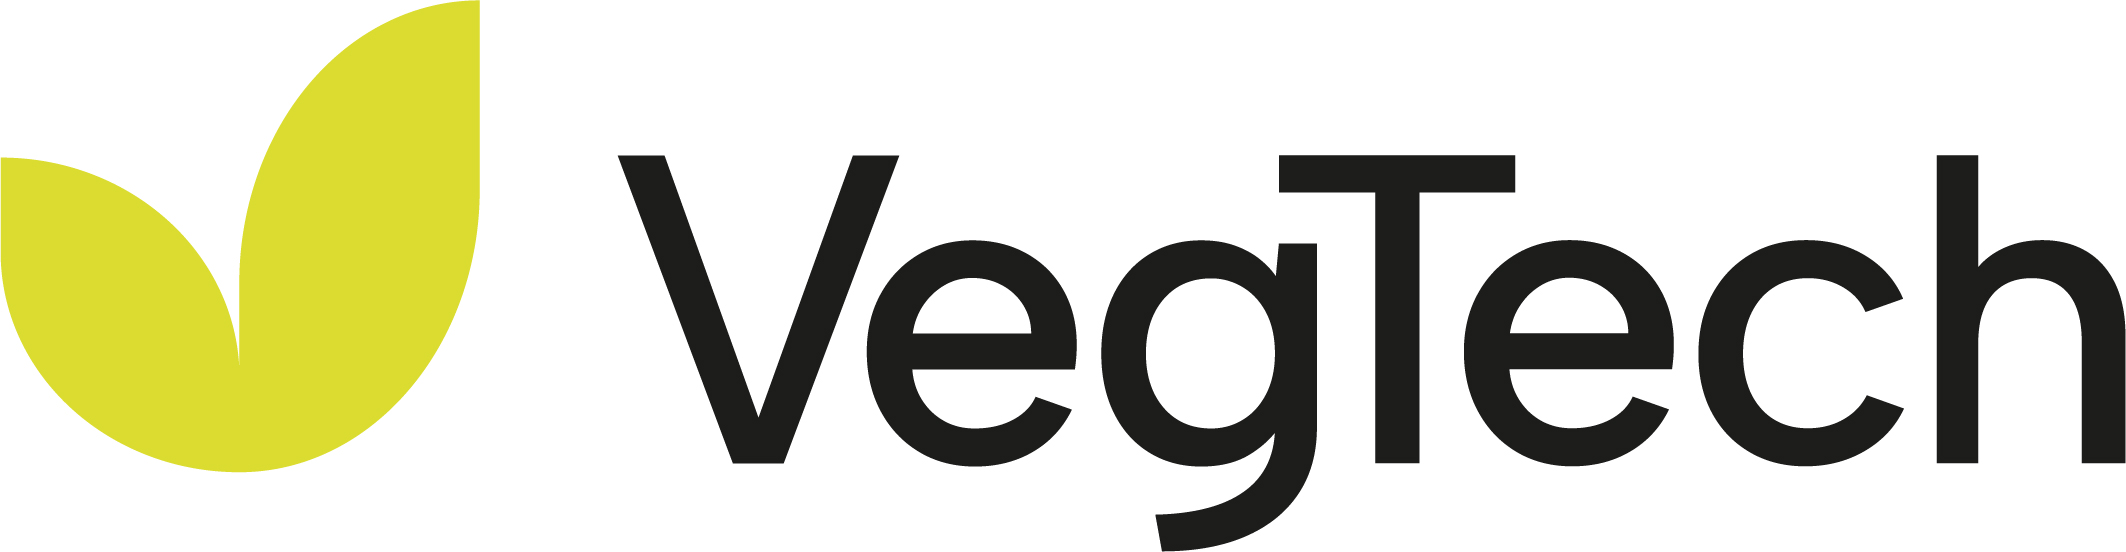 VegTech